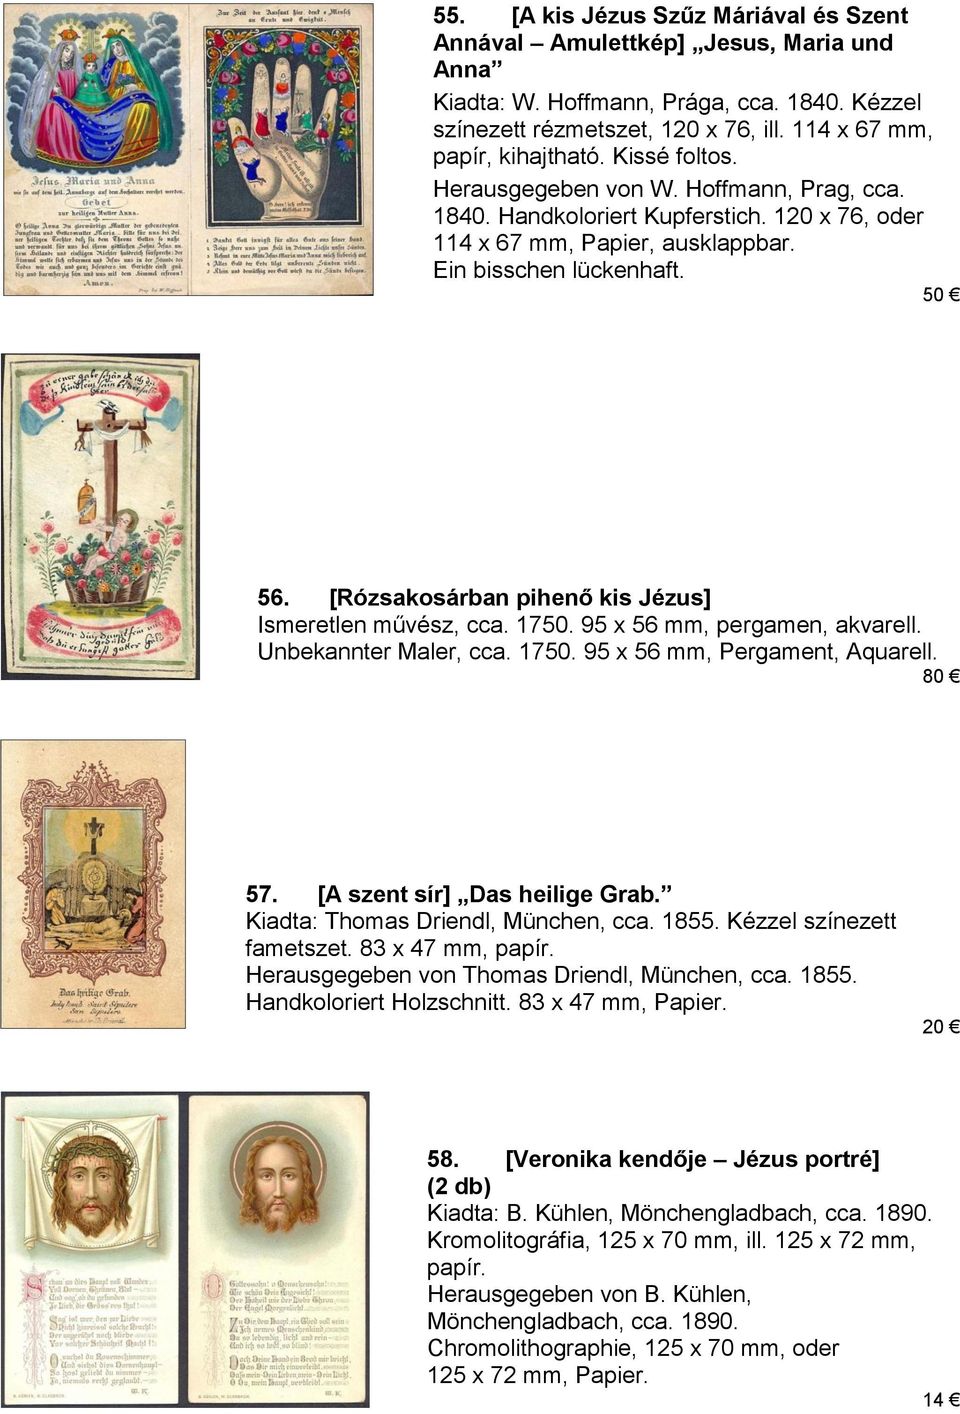 [Rózsakosárban pihenő kis Jézus] Ismeretlen művész, cca. 1750. 95 x 56 mm, pergamen, akvarell. Unbekannter Maler, cca. 1750. 95 x 56 mm, Pergament, Aquarell. 80 57. [A szent sír] Das heilige Grab.